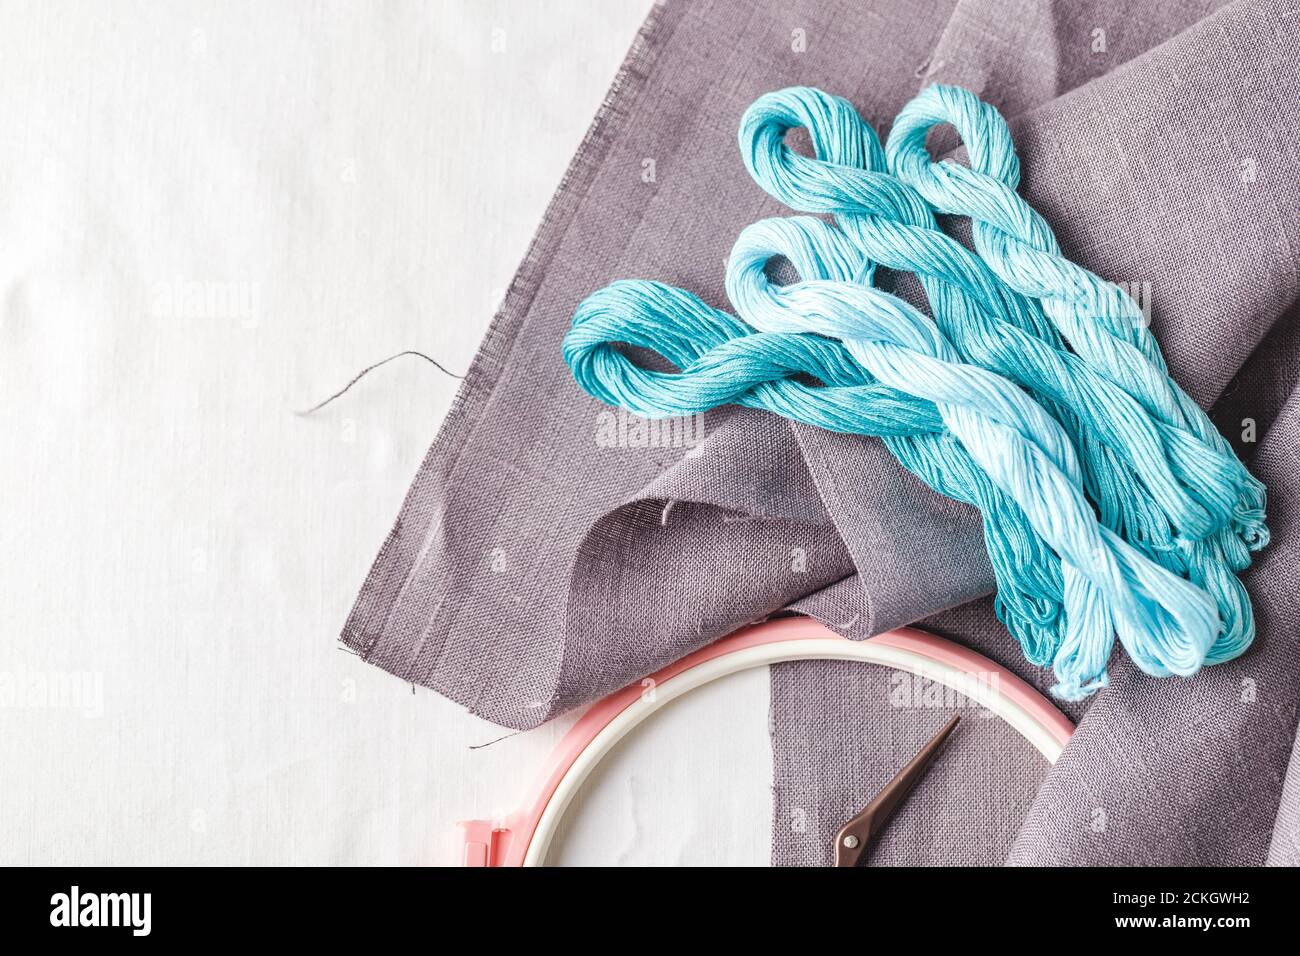 Set per ricamo. Tessuto di lino, motivi per ricamo, cerchi, fili di colore grigio, turchese e blu e aghi. Spazio di copia, vista dall'alto Foto Stock